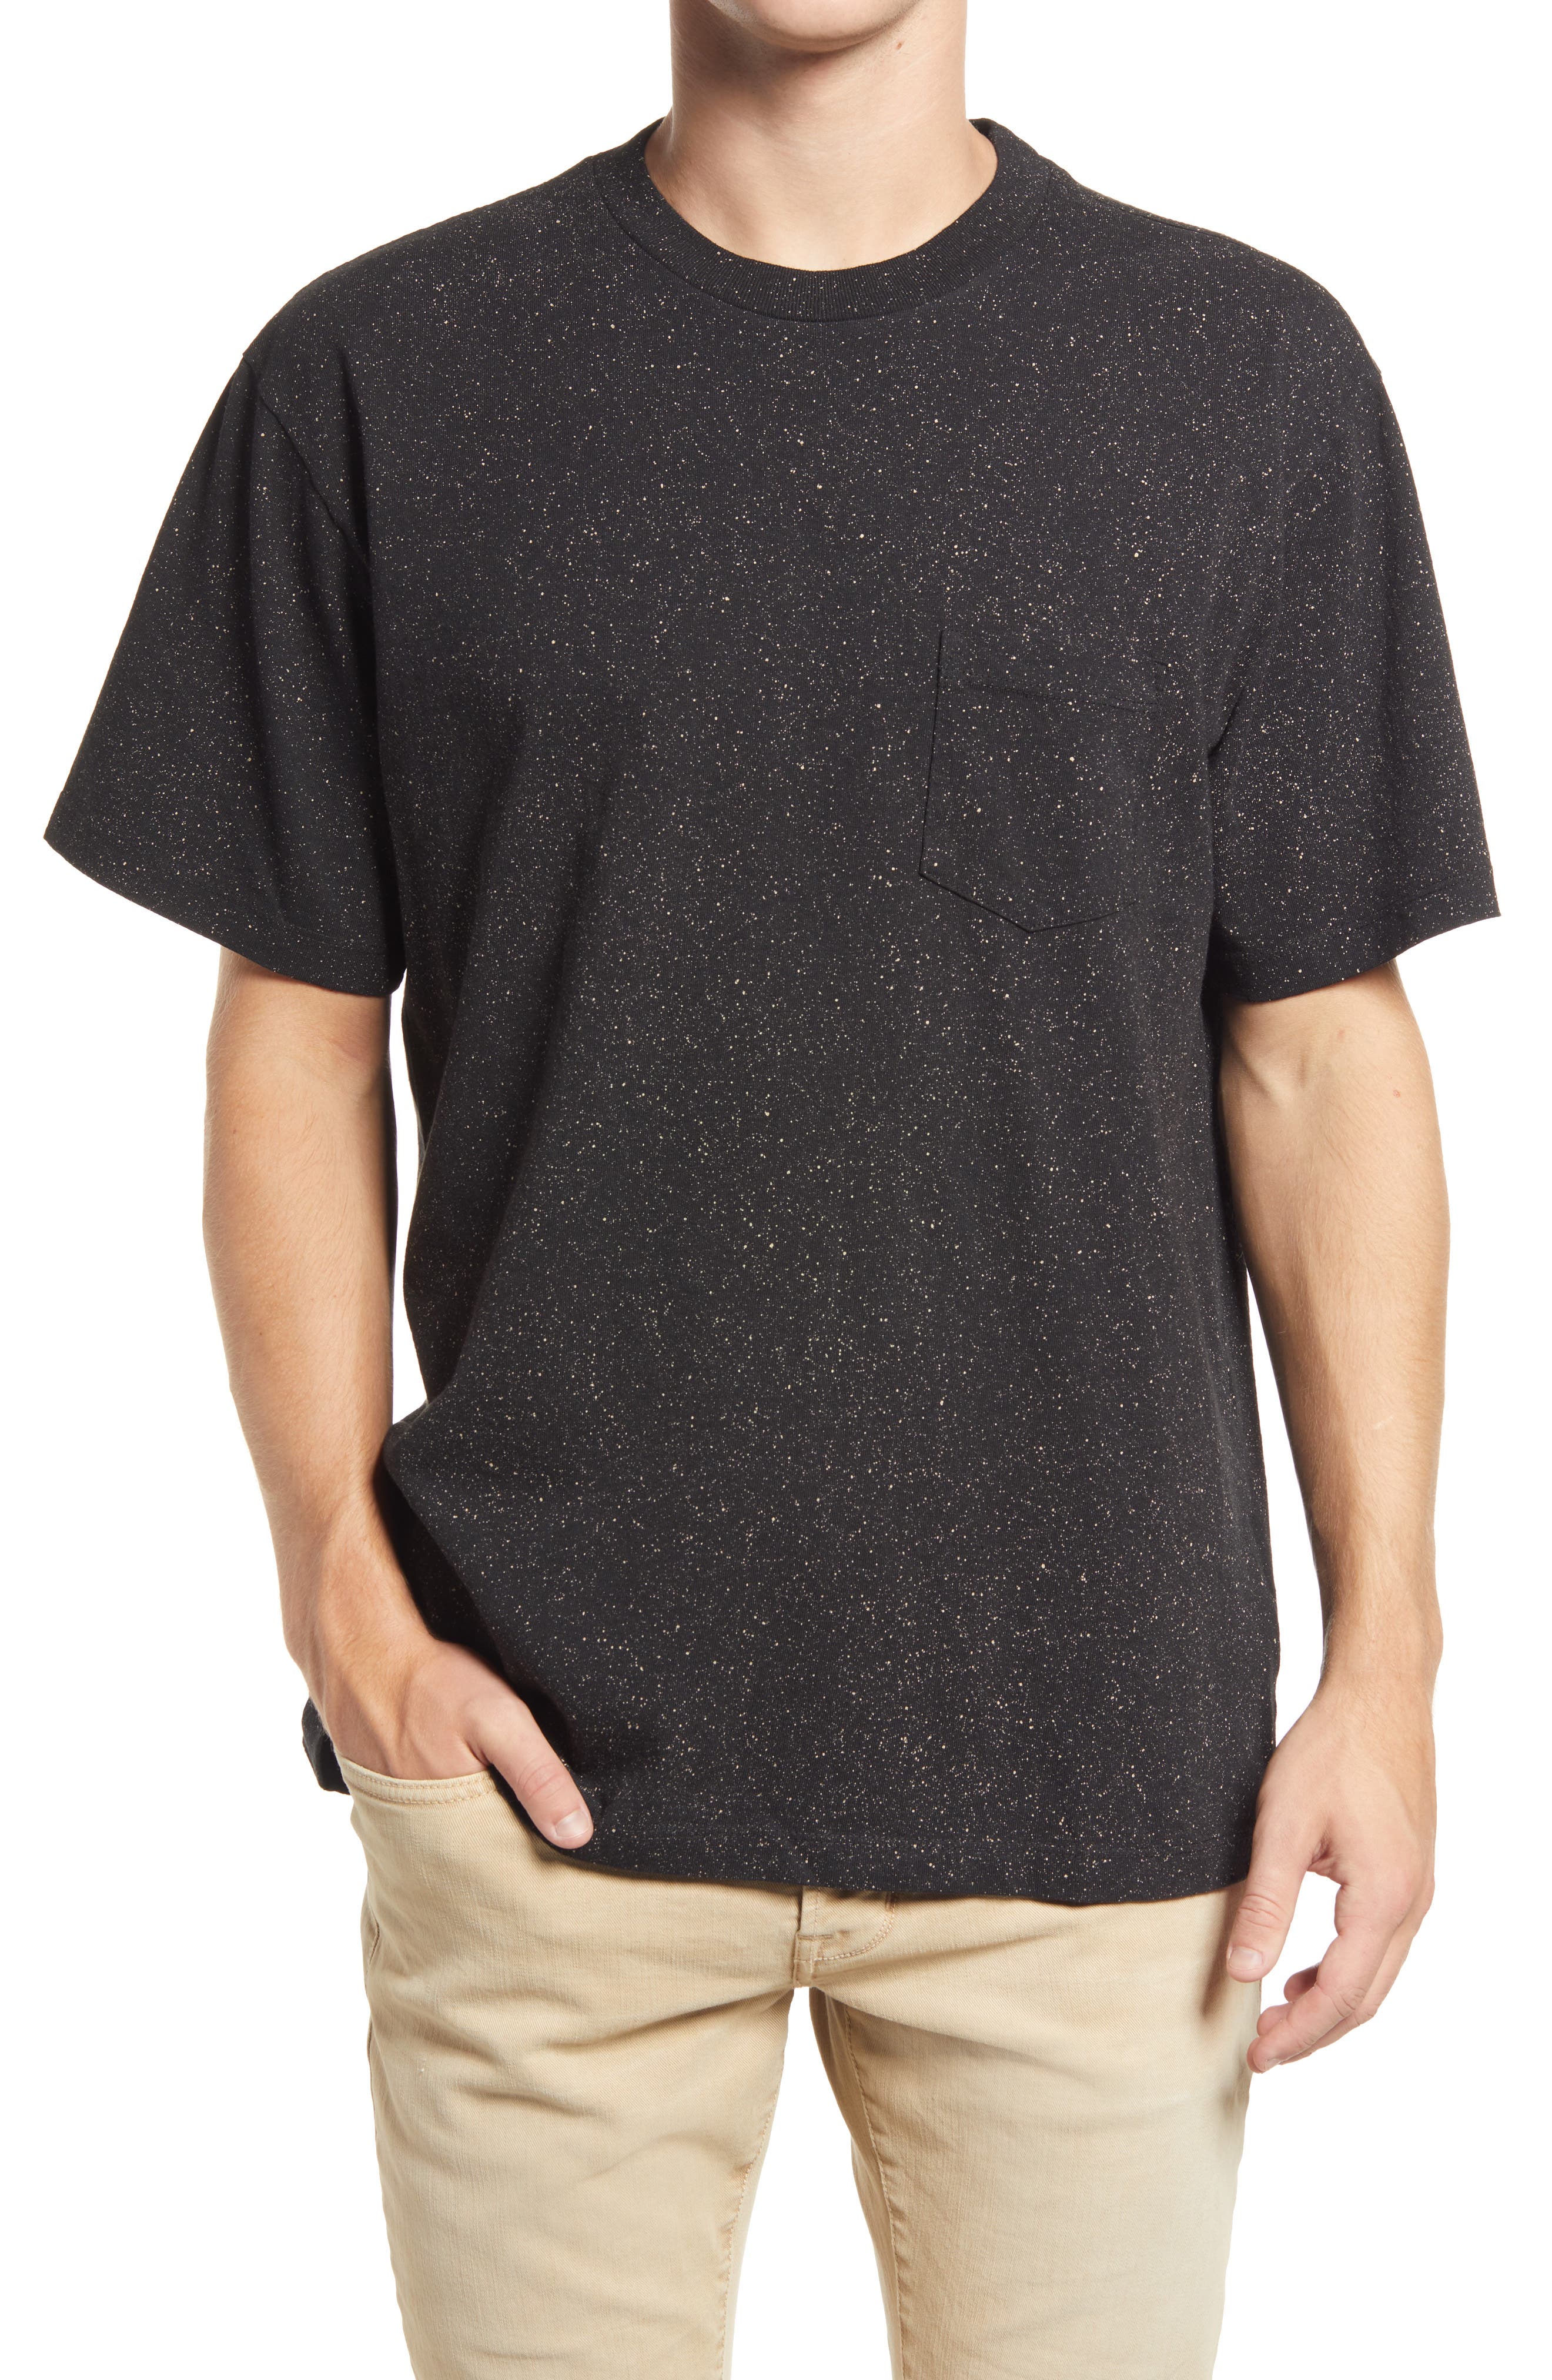 John Elliott Men's Cotton Pocket T-Shirt in Black at Nordstrom, Size Medium